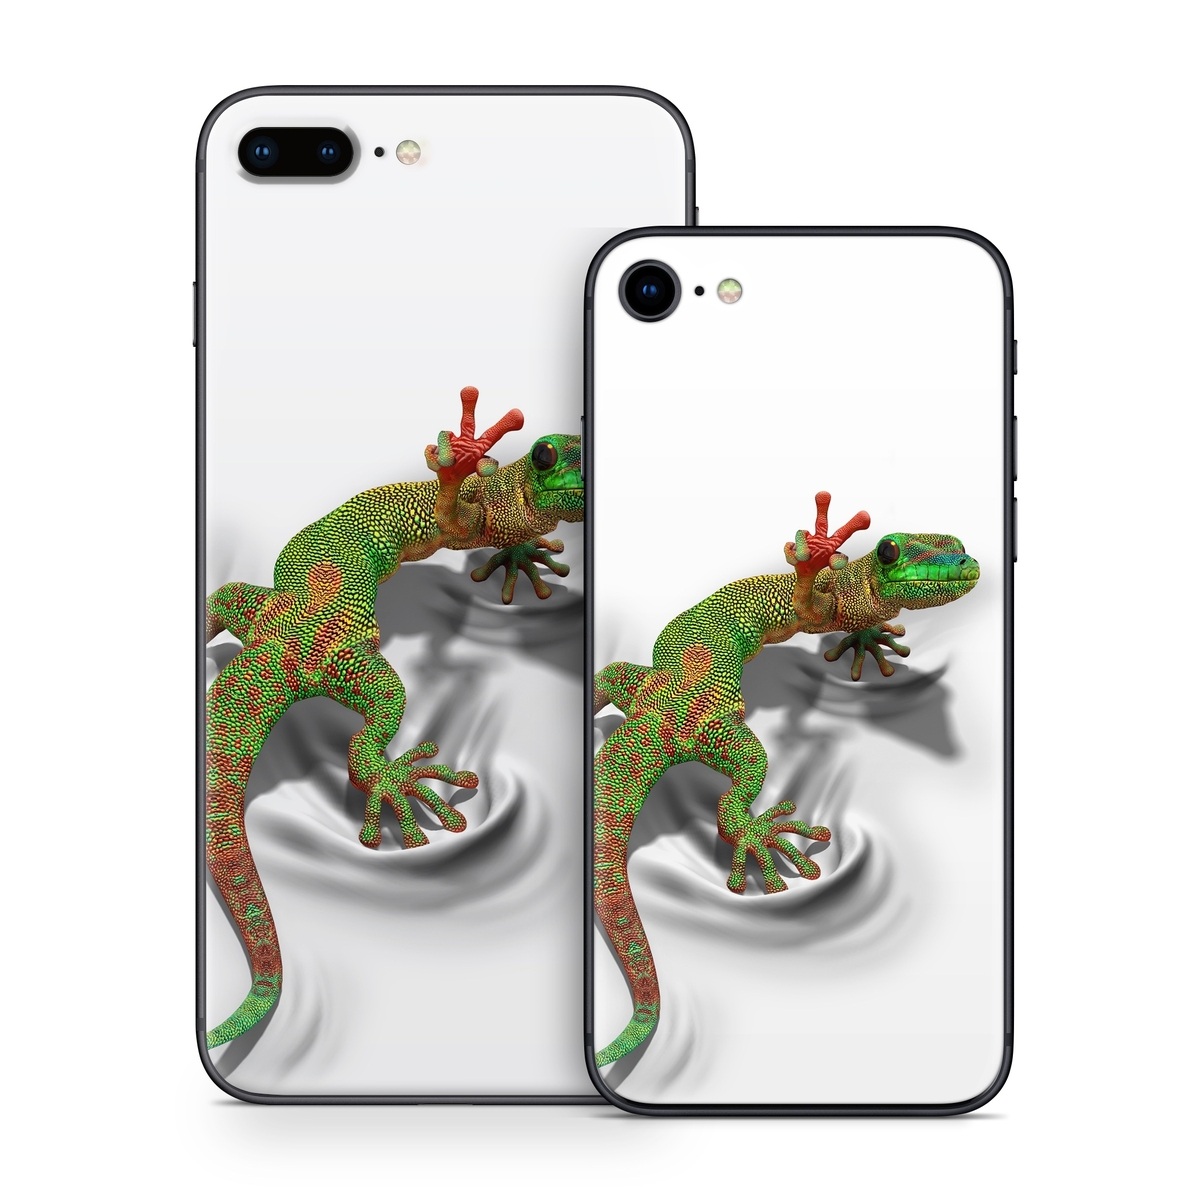 gecko iphone toolkit 5.1.1 legit